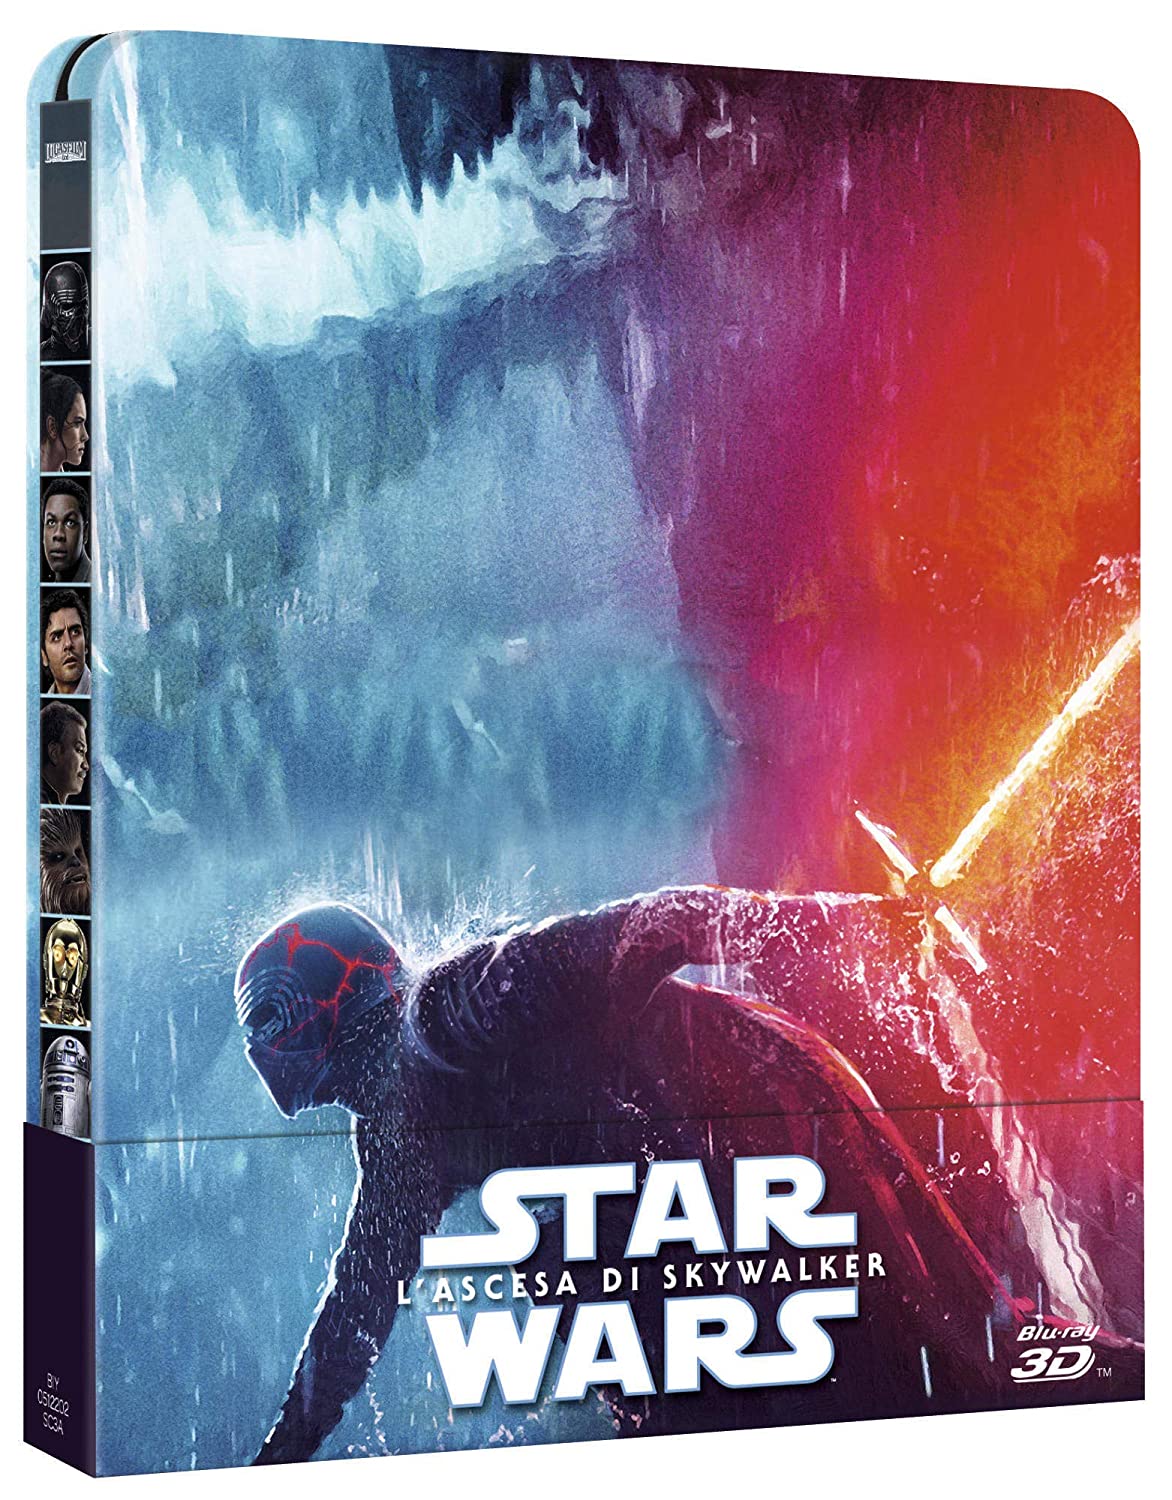 Star Wars L'Ascesa Di Skywalker 3D Steelbook (Limited Edition) (3 Blu Ray)